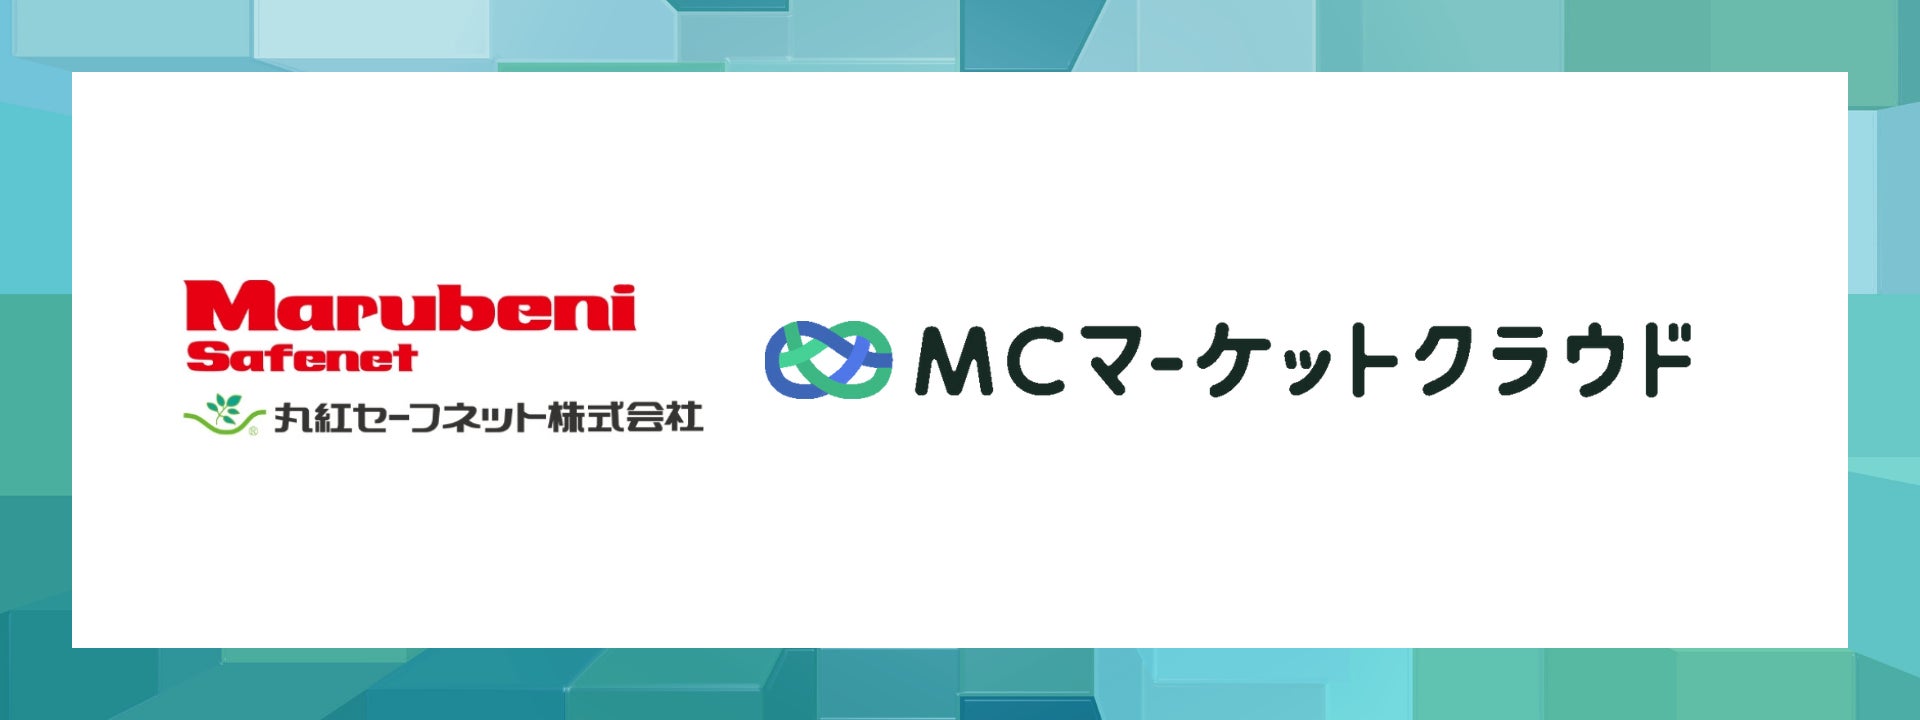 総合商社丸紅の機関代理店である丸紅セーフネット株式会社に「MCマーケットクラウド」を提供開始!